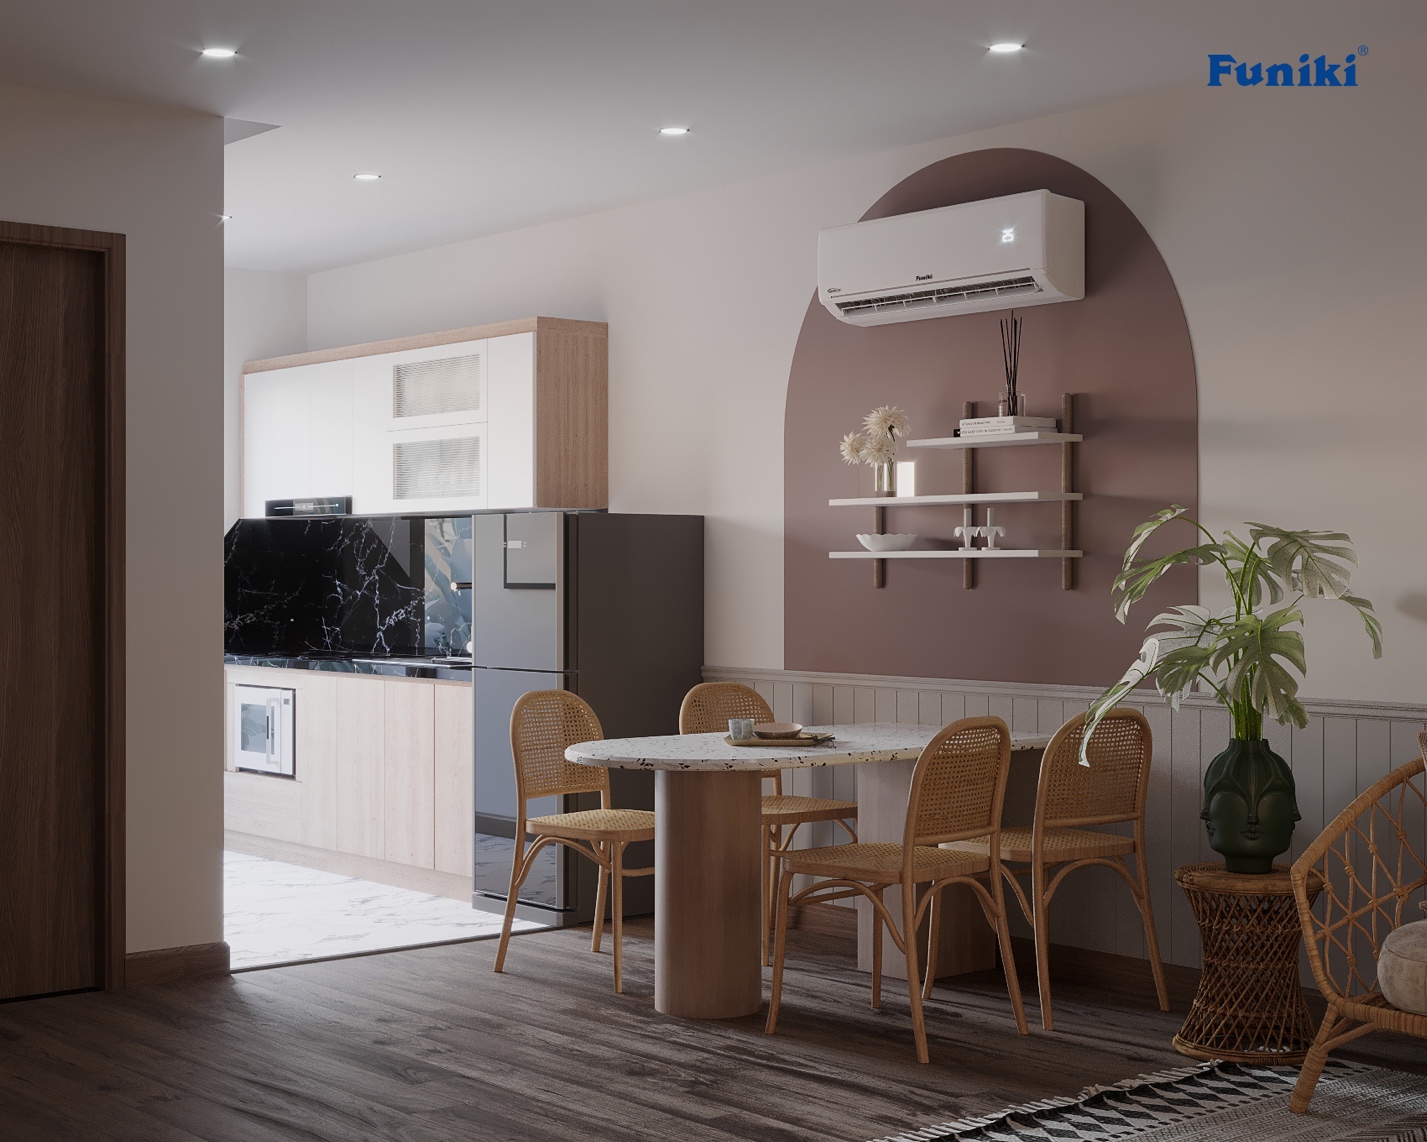 F5 phòng khách, thở sạch sống vui: “Một chiếc căn hộ” xinh đẹp giúp “cô chủ nhỏ” cảm thấy êm đềm và an yên sau những ngày làm việc vất vả - Ảnh 5.